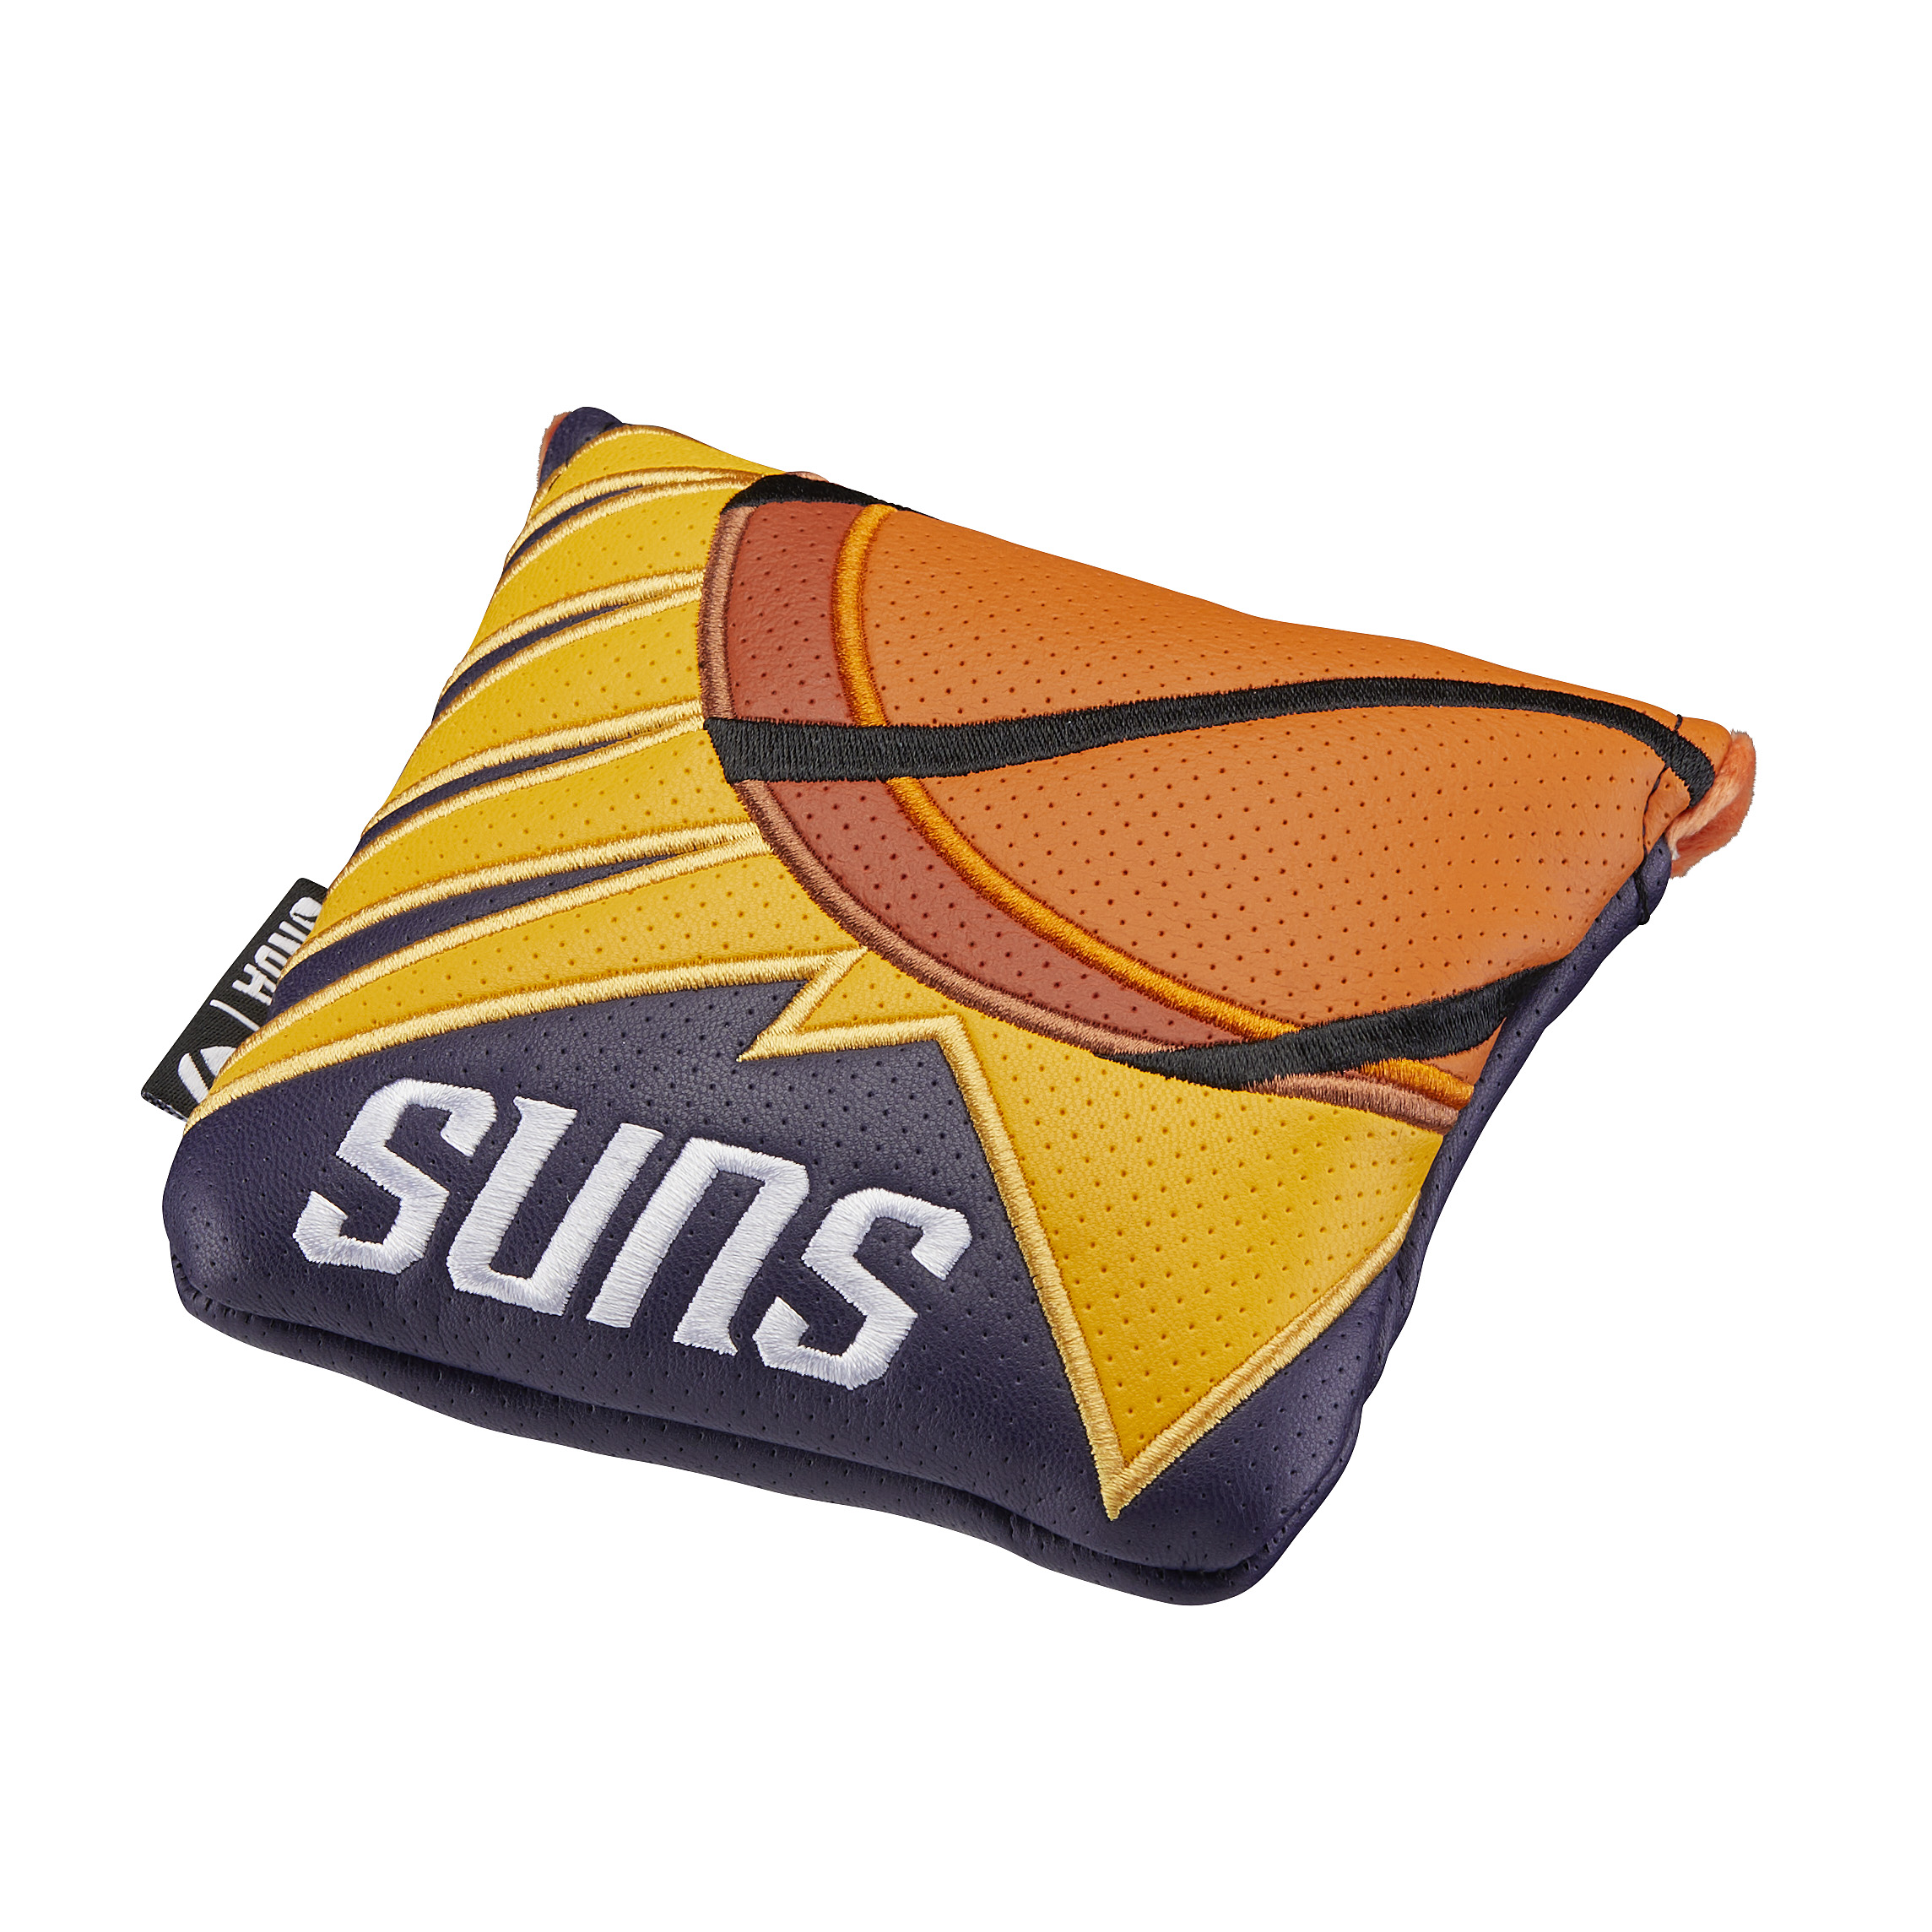 Phoenix Sunsスパイダーヘッドカバー /の大画像